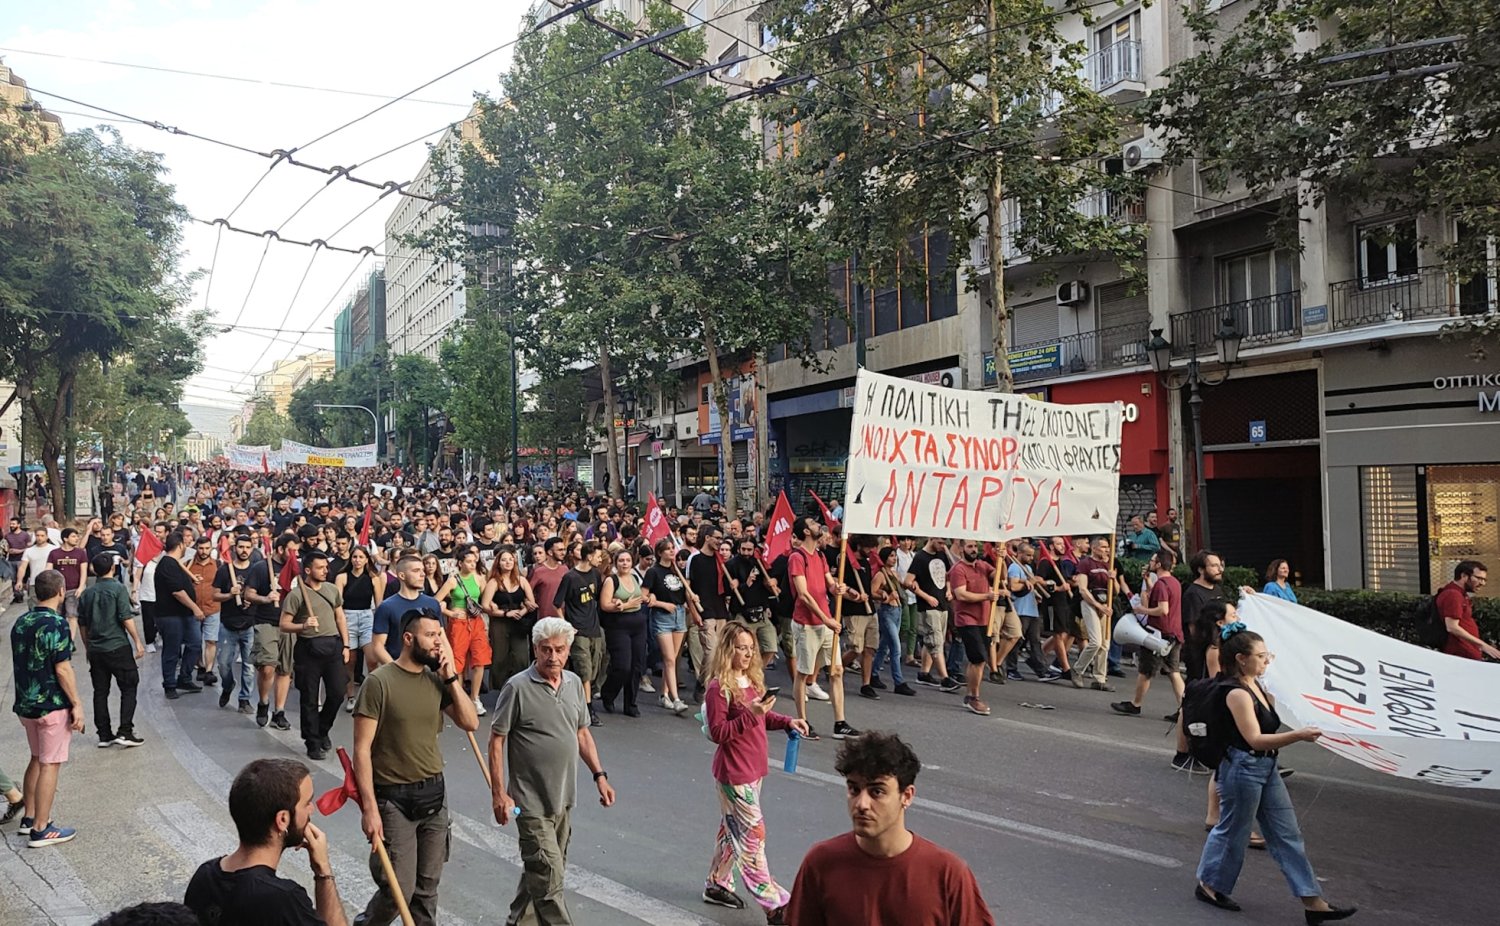 Naufrage en Grèce : « les manifestants pointent la responsabilité du gouvernement et de l'UE »